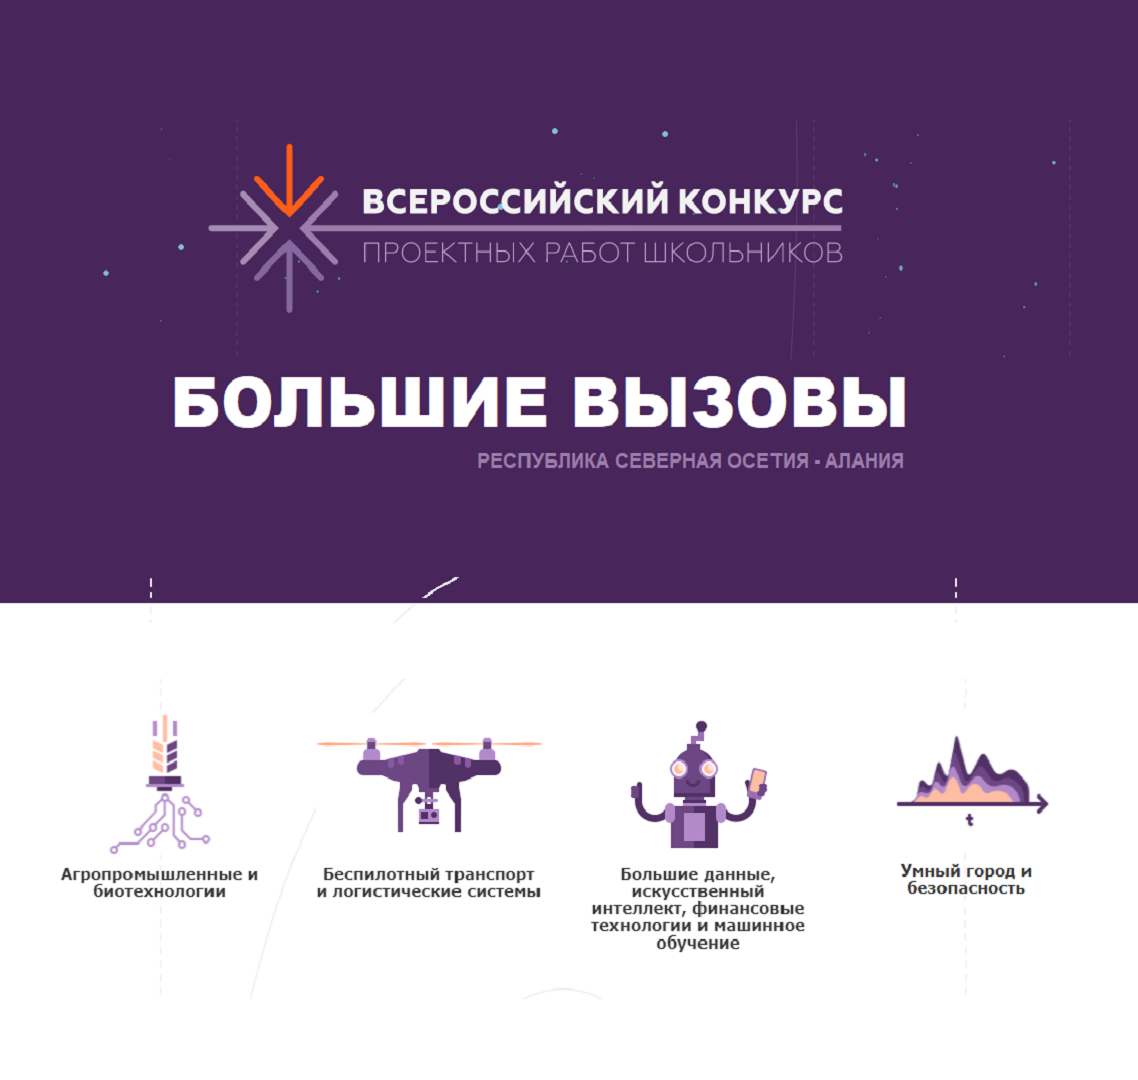 Всероссийский конкурс "Большие вызовы" впервые проходит во Владикавказе на базе Кванториума